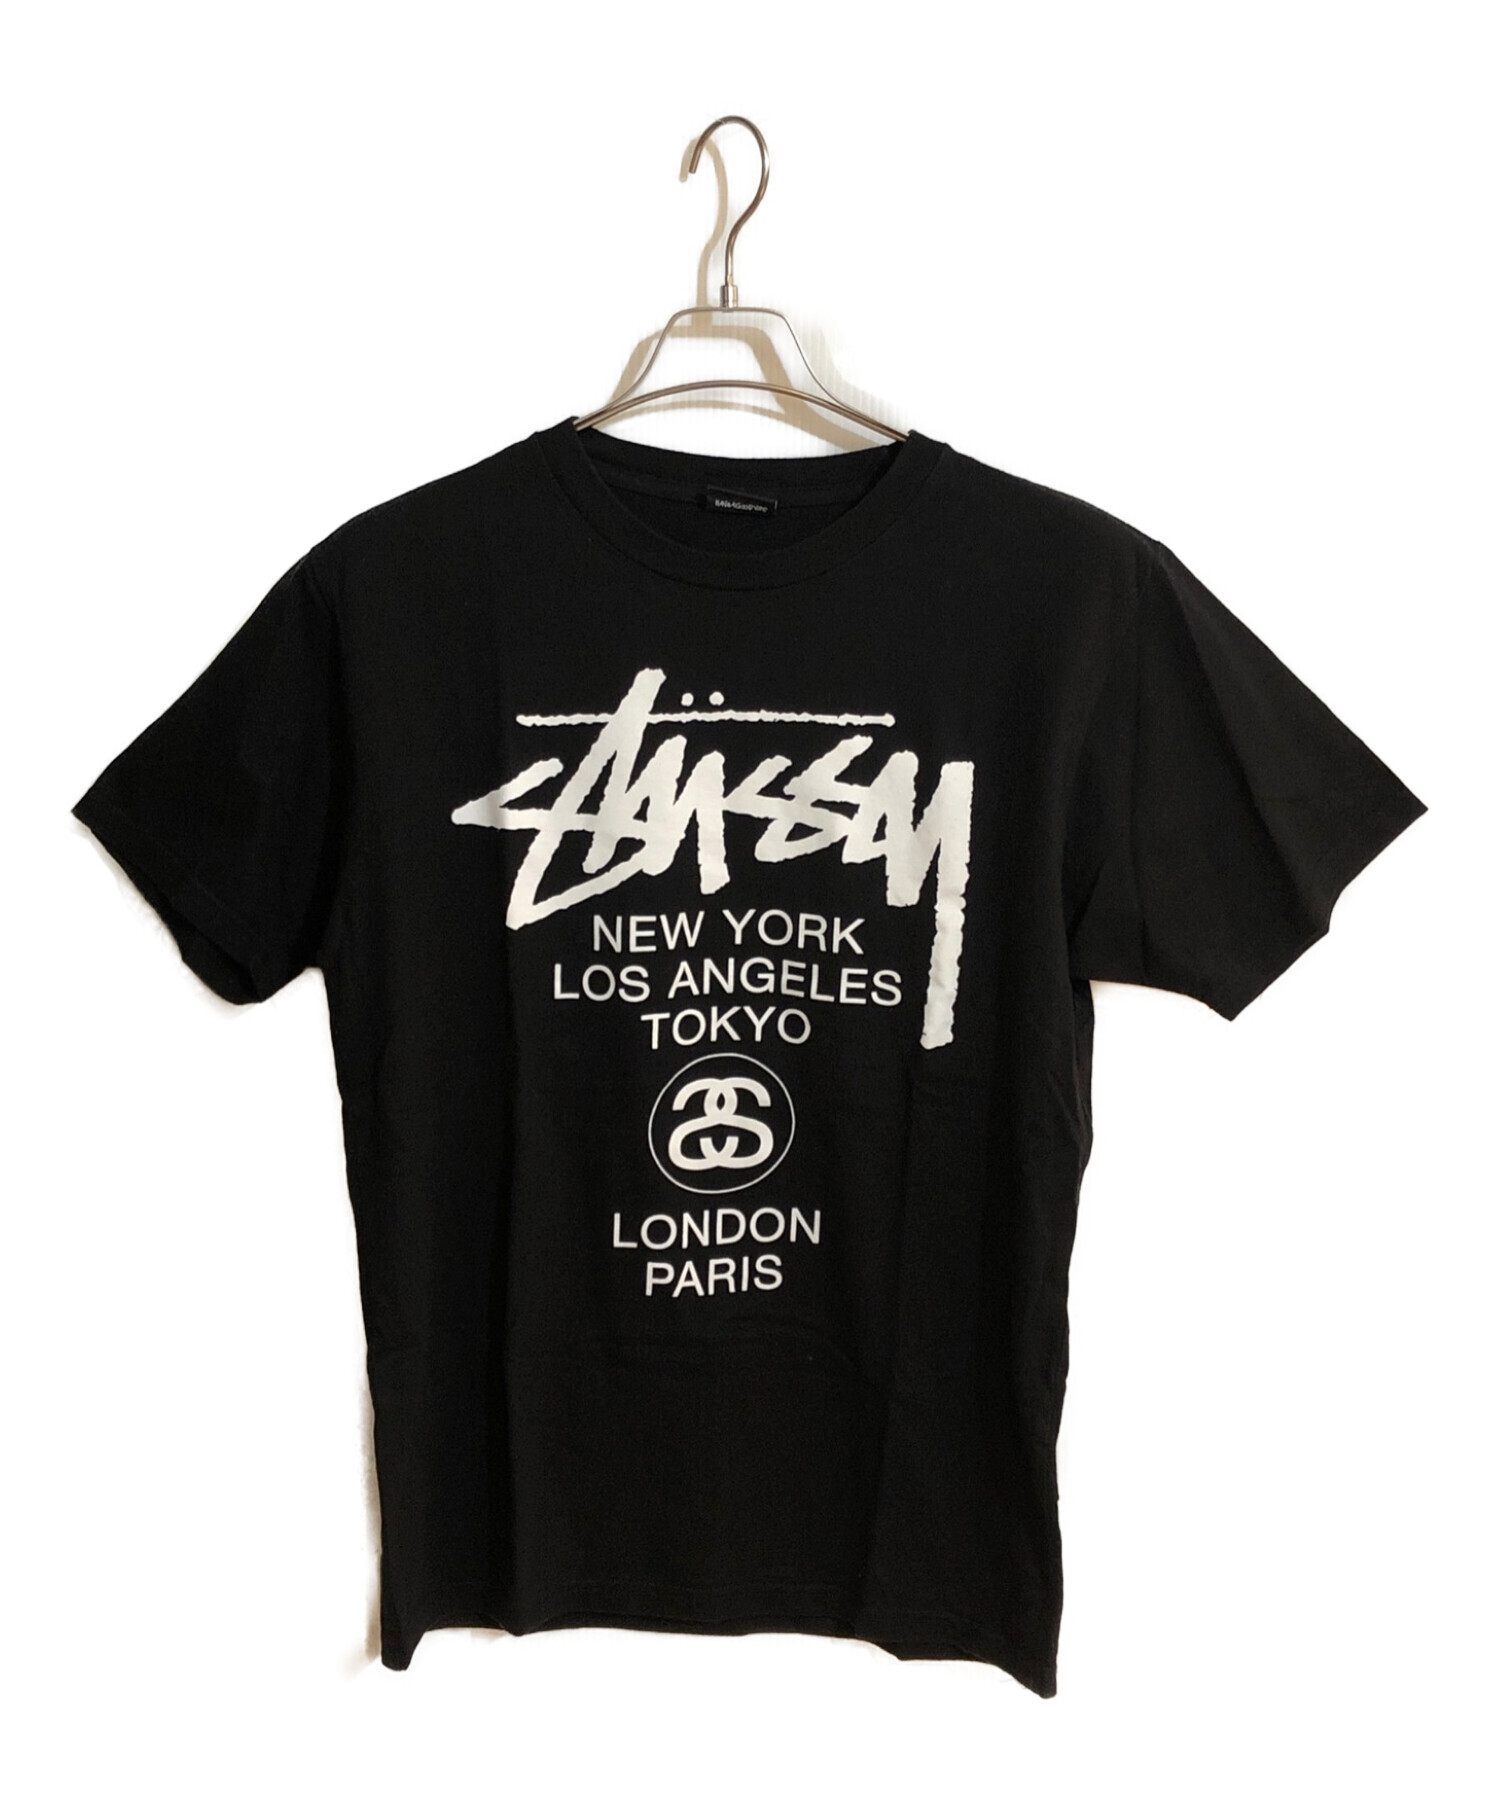 stussy (ステューシー) プリントTシャツ ブラック サイズ:SIZE S